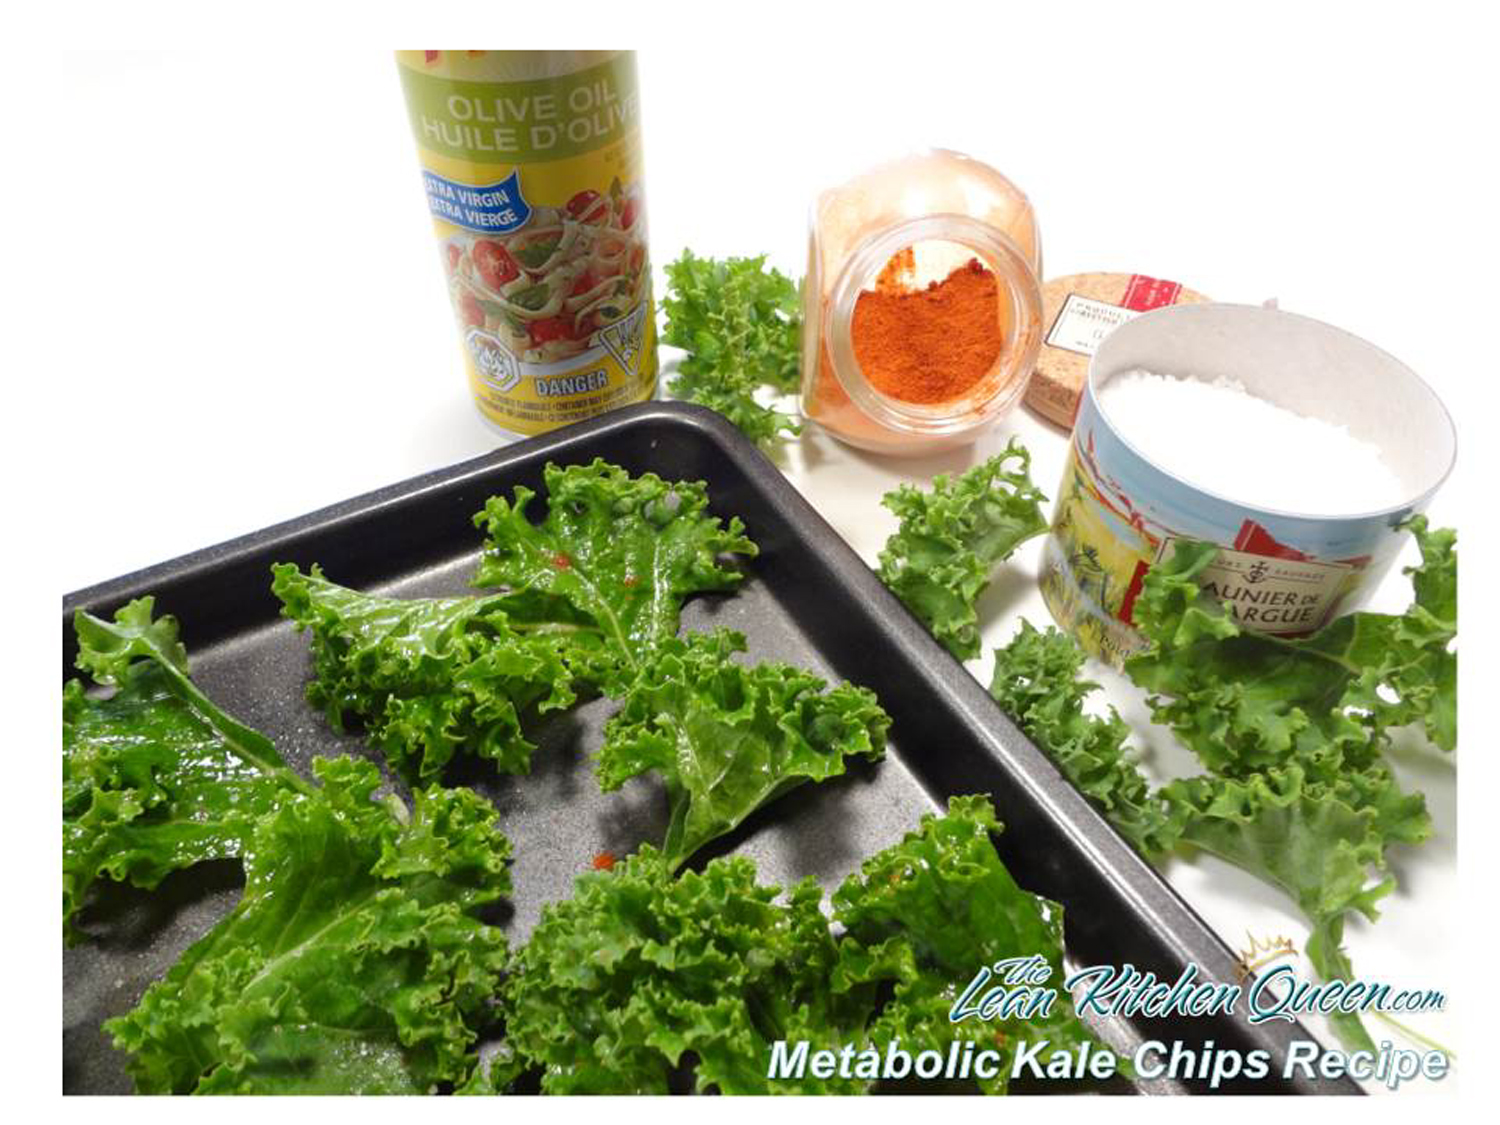 Metabolic Kale Chips Recipe Ingredients